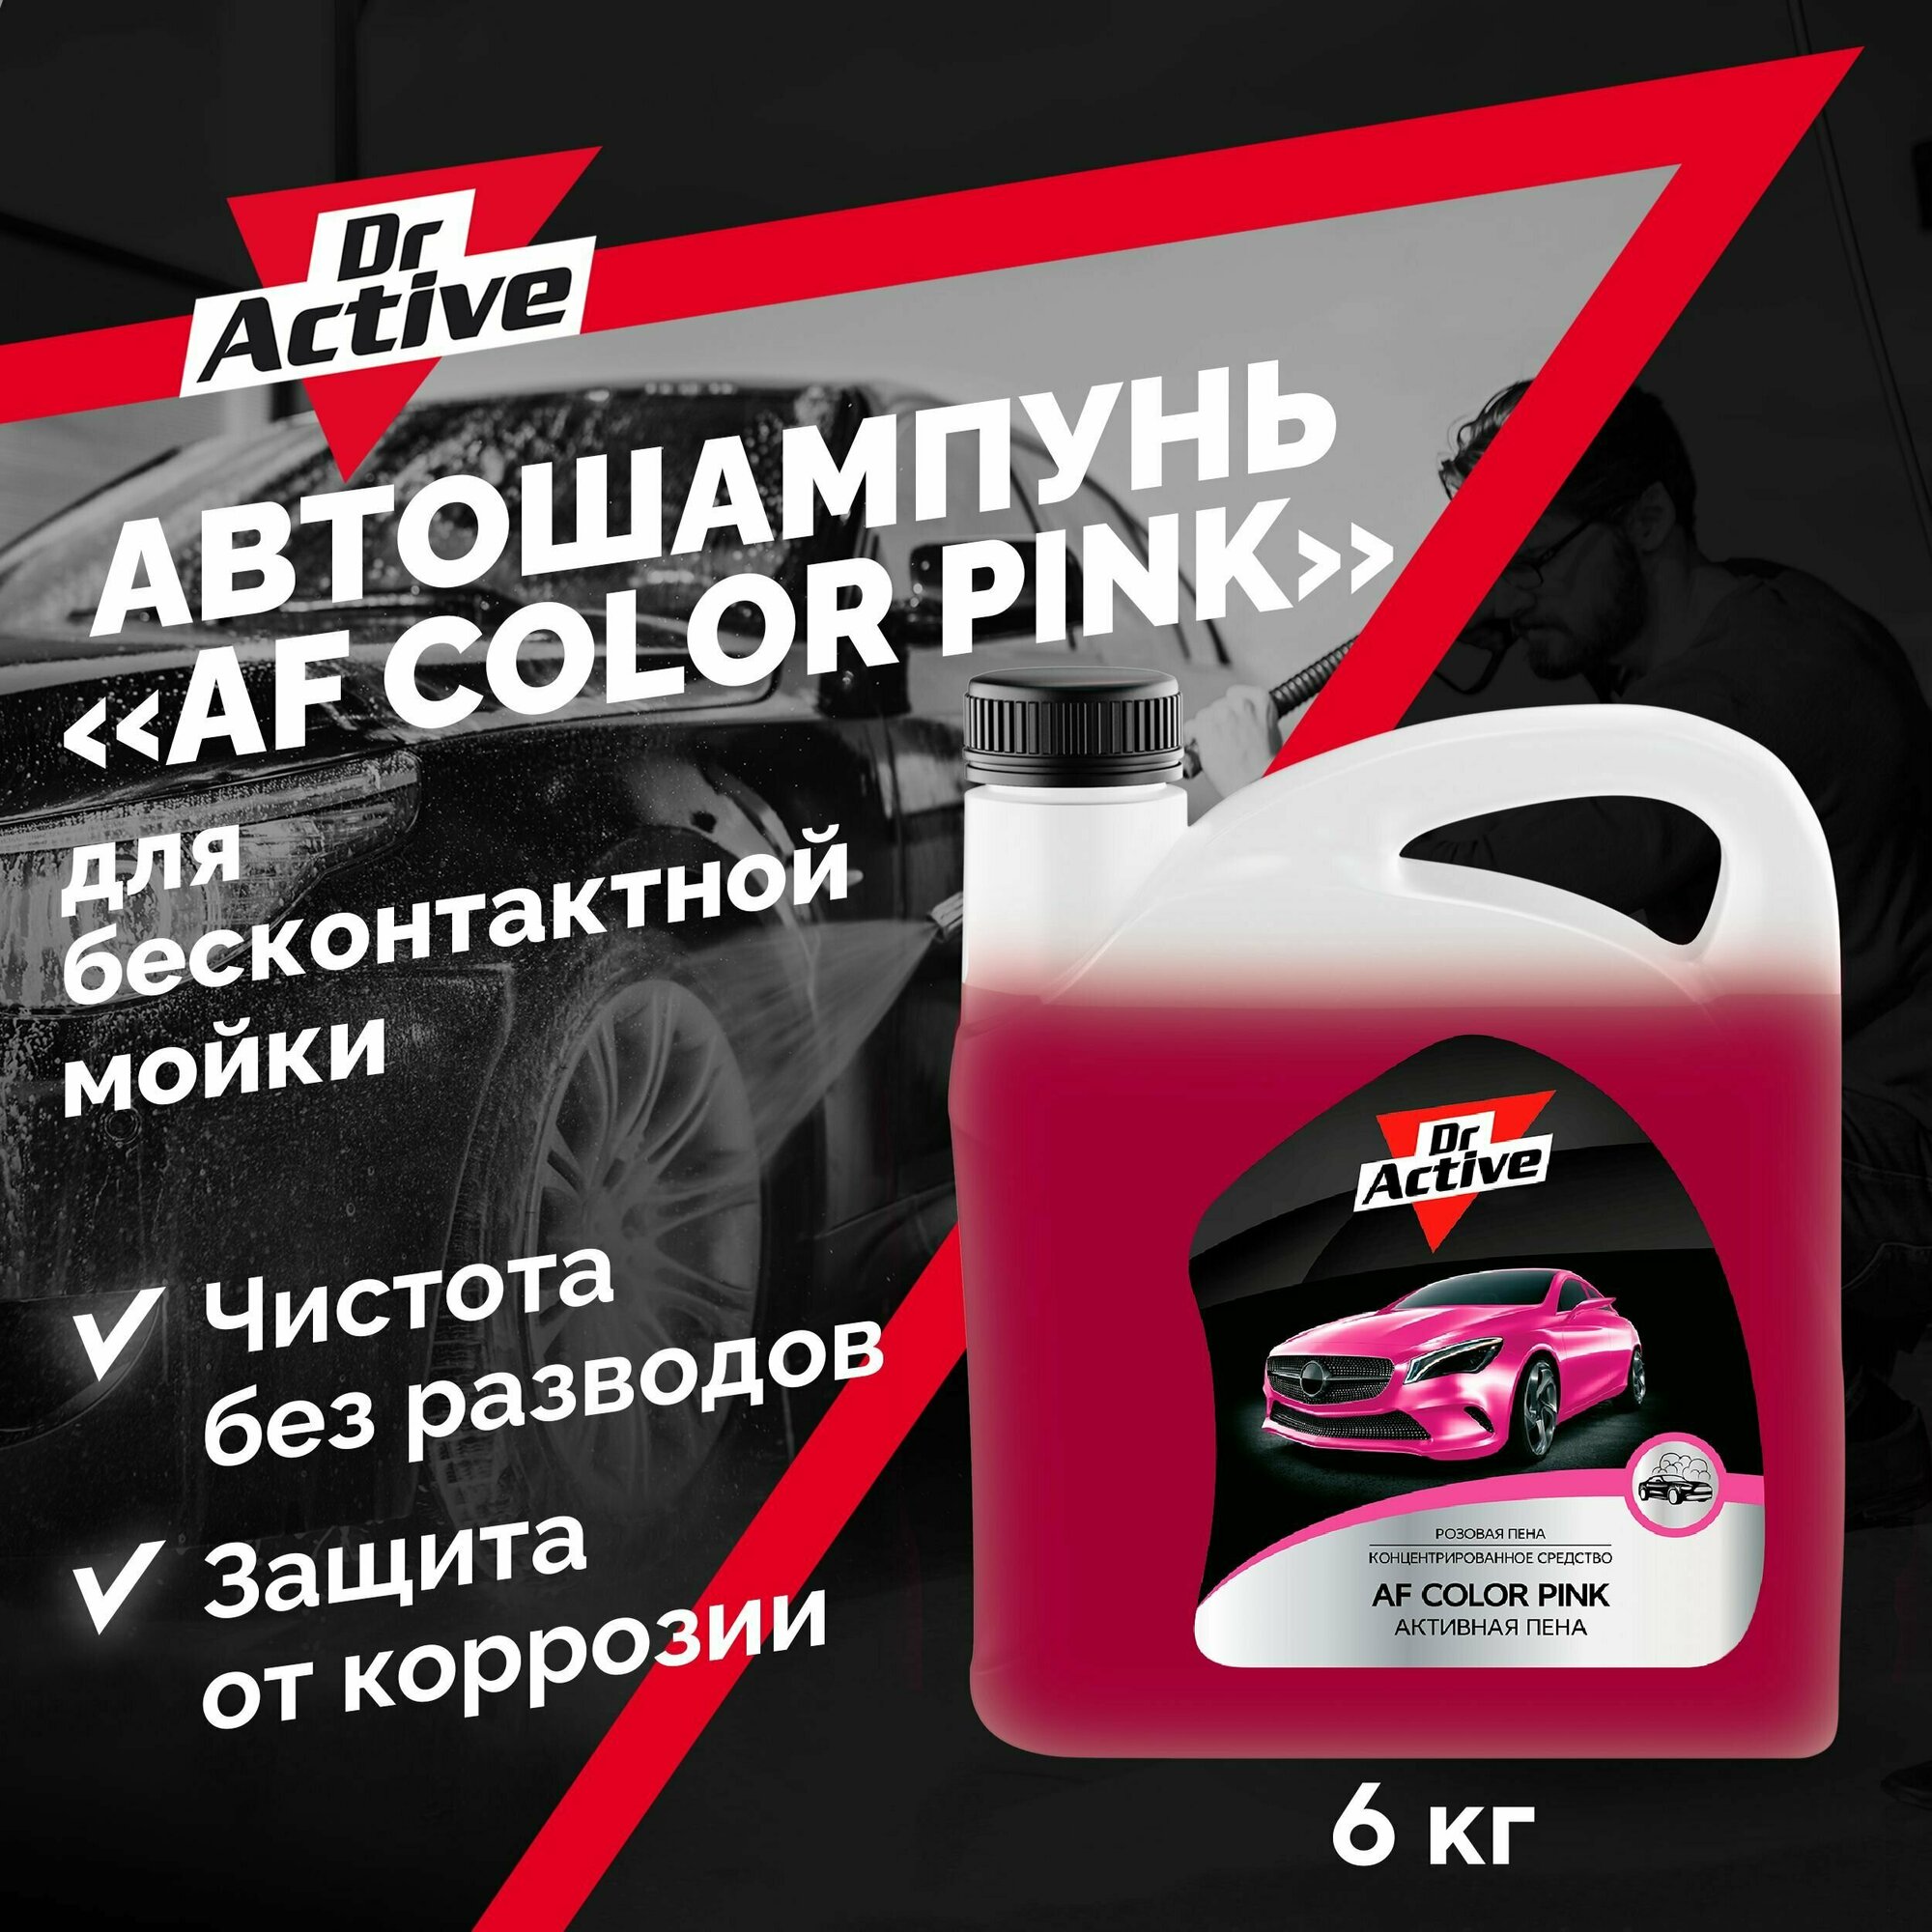 Автошампунь SINTEC Dr. Active "AF Color Pink" для бесконтактной мойки автомобиля, концентрат 6 кг, активная пена